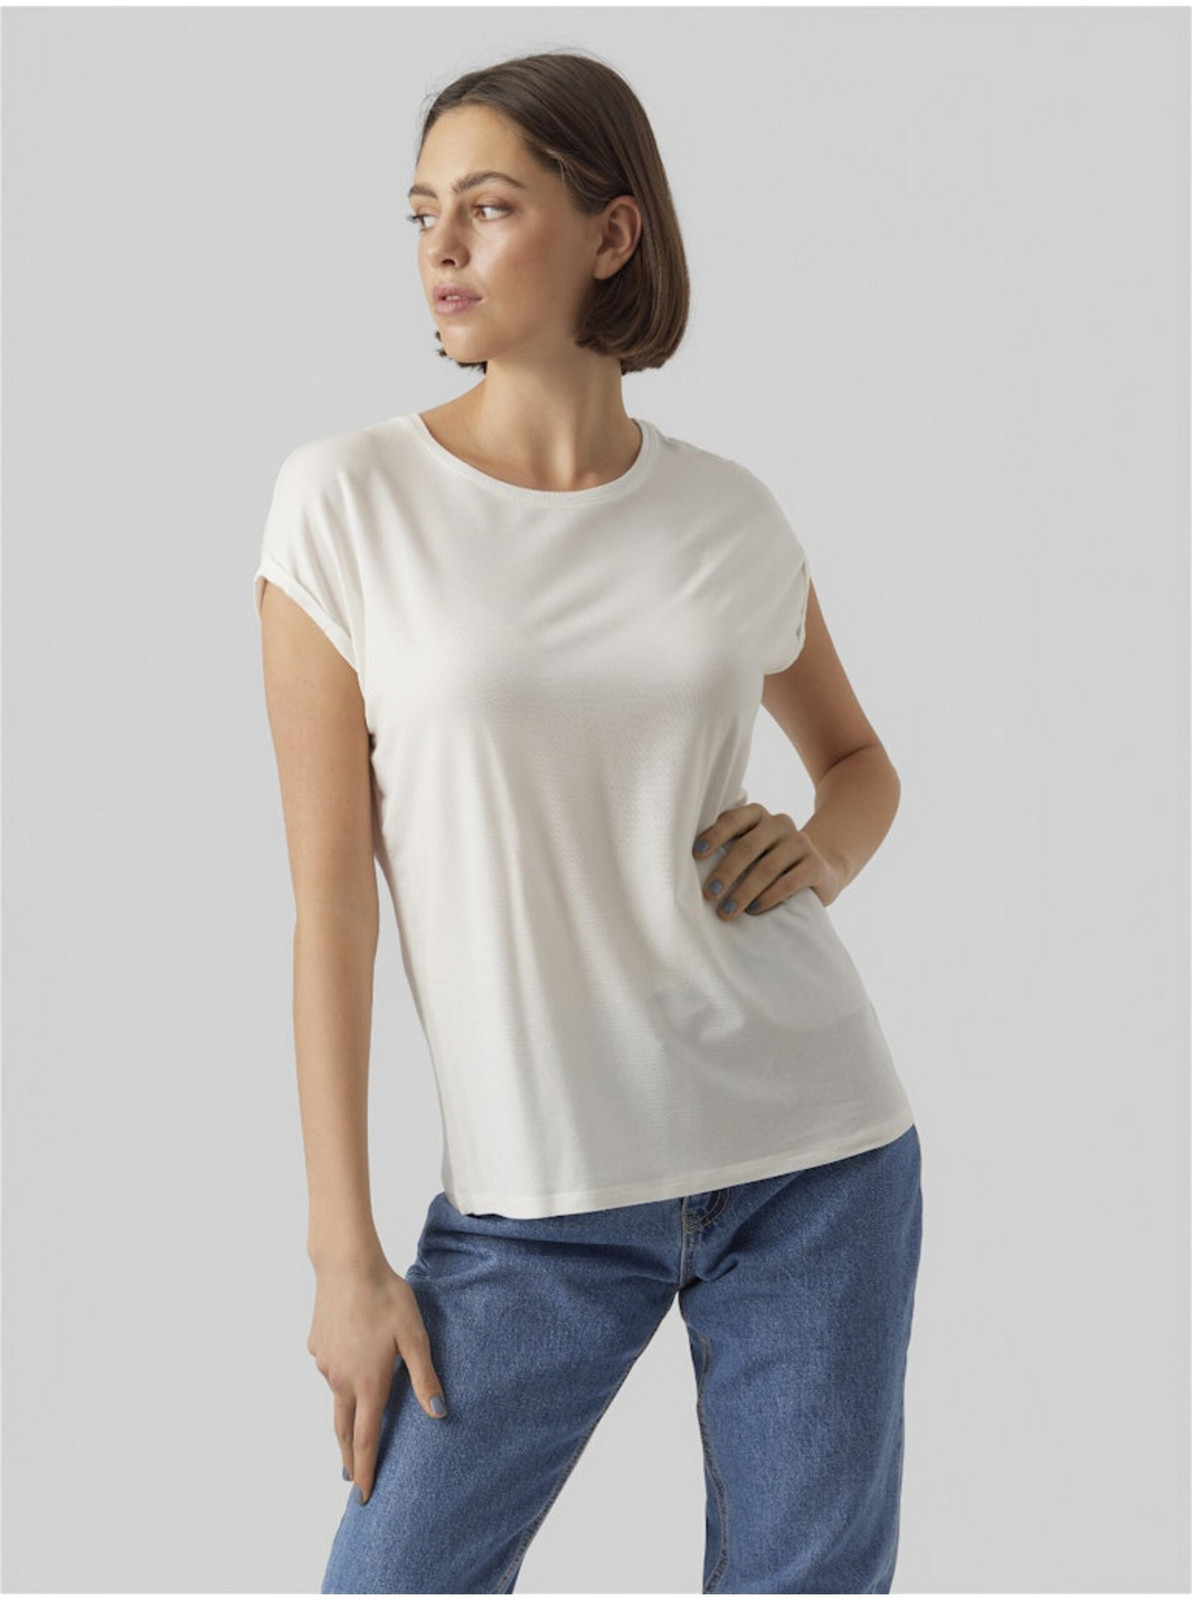 Bílé dámské tričko Vero Moda Ava - Dámské